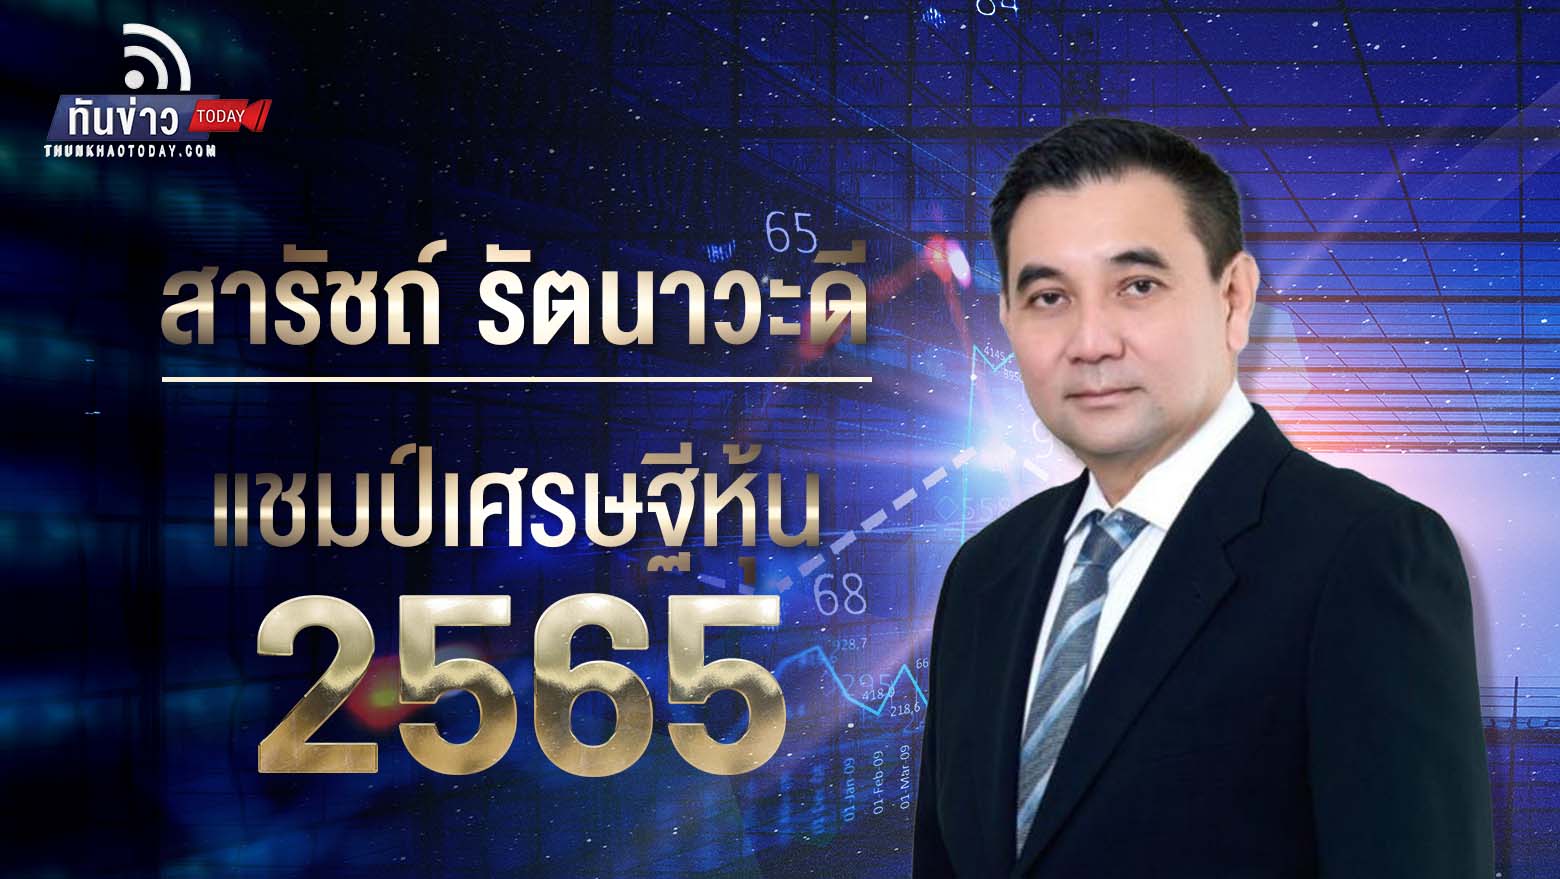 สารัชถ์ รัตนาวะดี รวย 2.19 แสนล้านบาท ครองแชมป์เศรษฐีหุ้นไทย 4 ปีซ้อน ขณะที่ วิทัย รัตนากร ผู้อำนวยการธนาคารออมสิน ครองตำแหน่งนักการเงินแห่งปี 2565